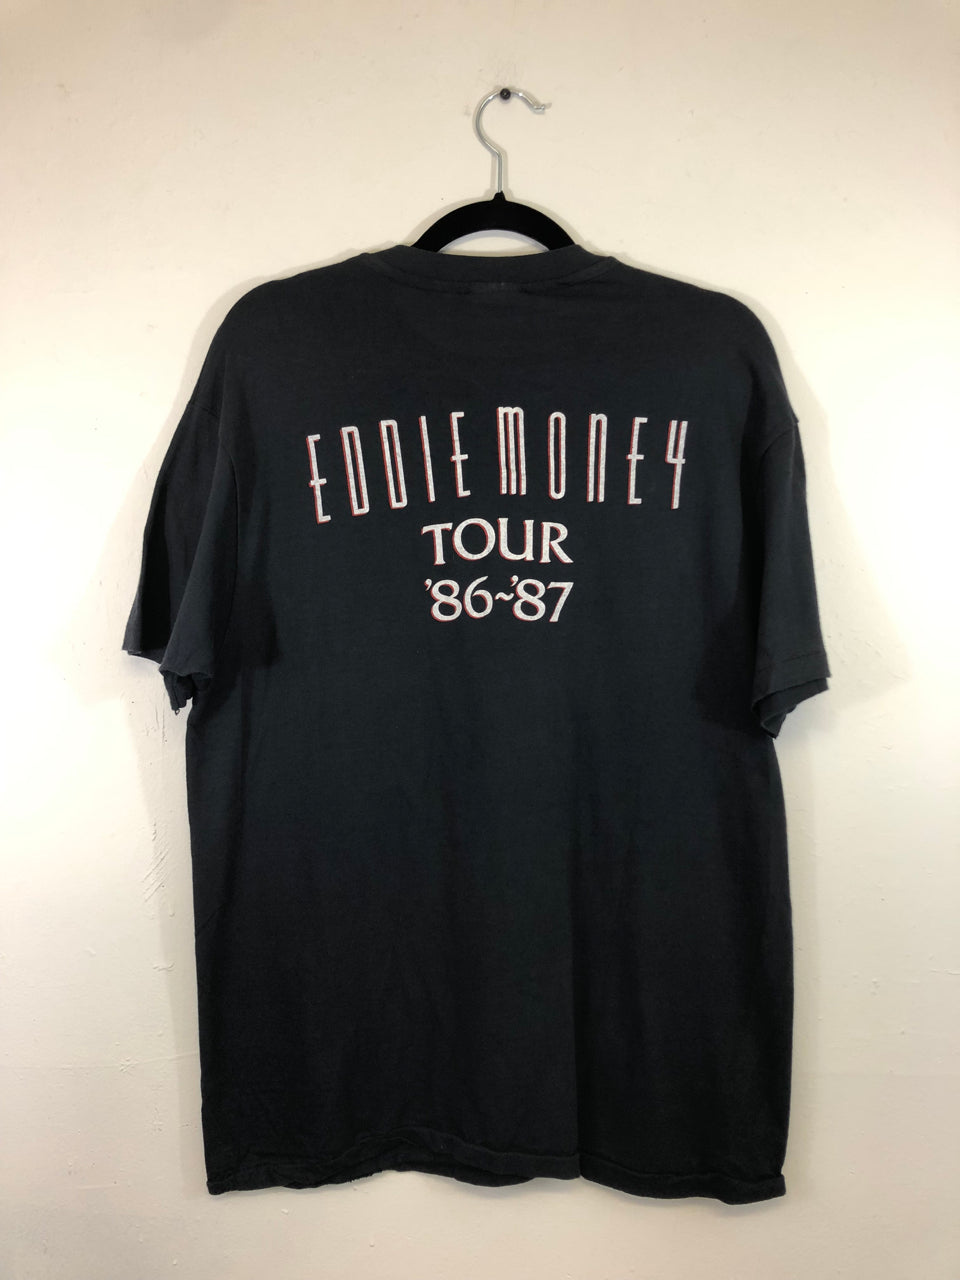 Eddie Money '86-'87 Tour T-Shirt